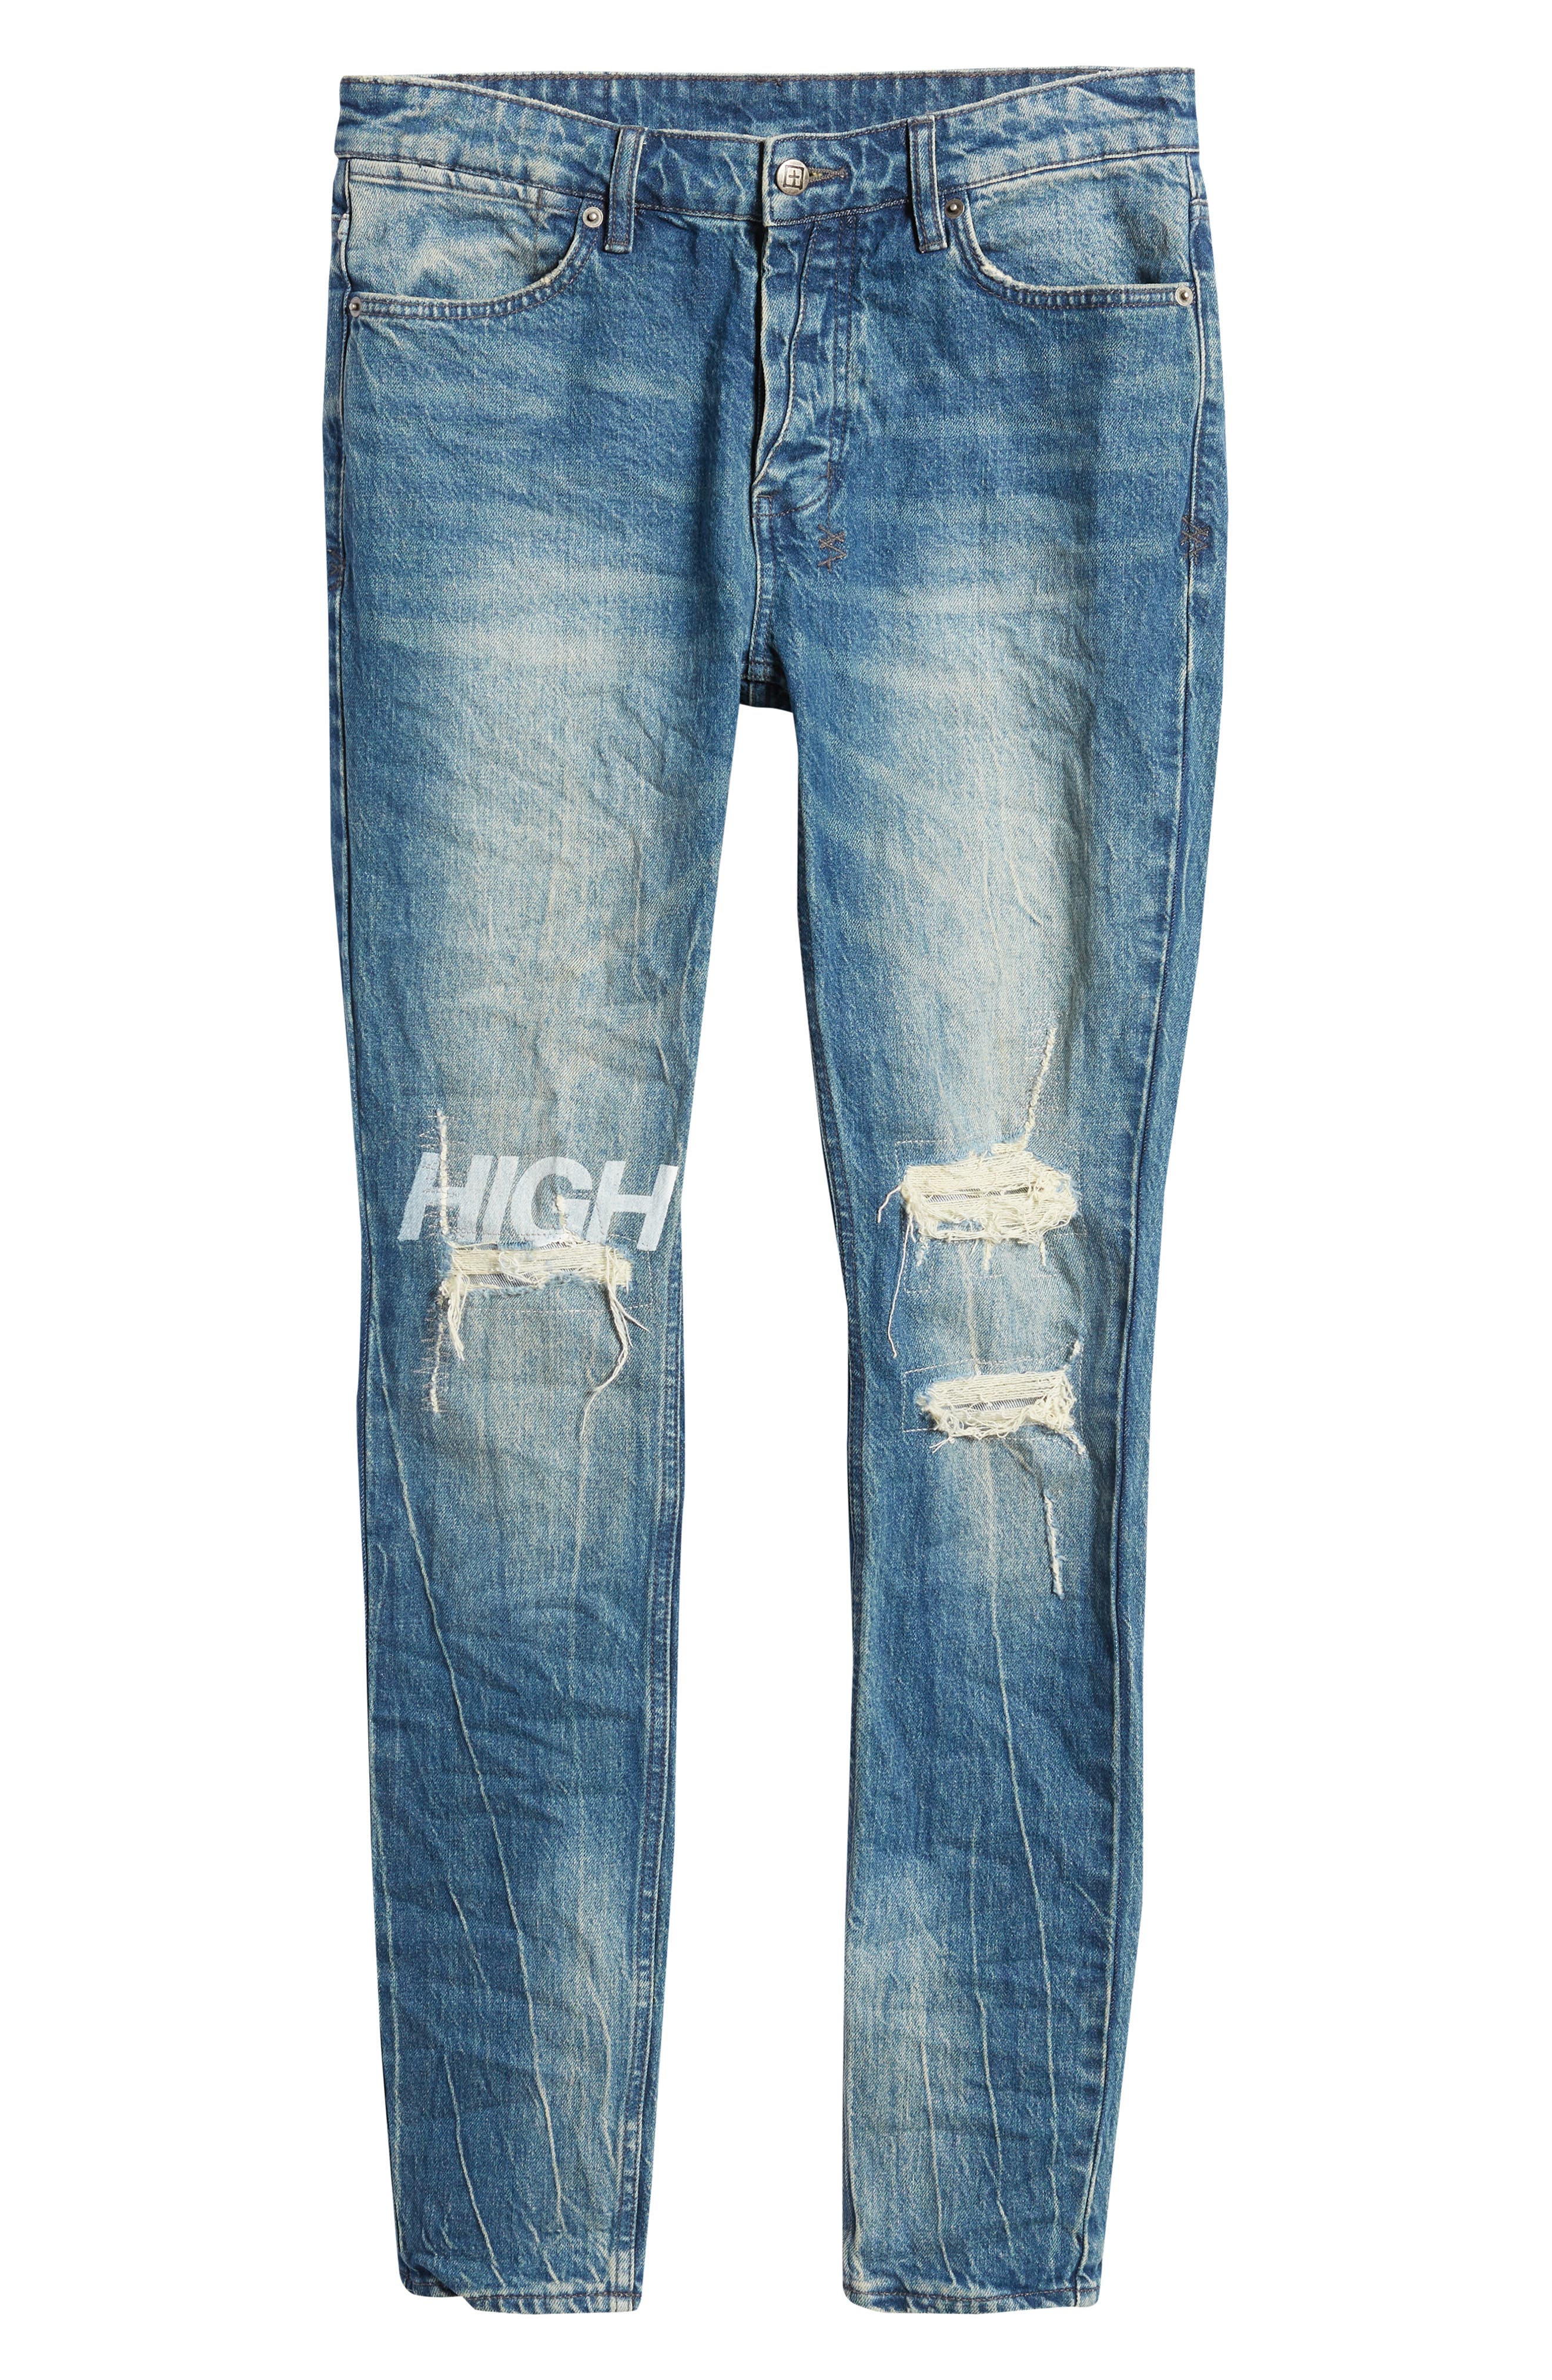 Ksubi Men's Van Winkle High Rage Skinny Jeans in Denim at Nordstrom, Size 36